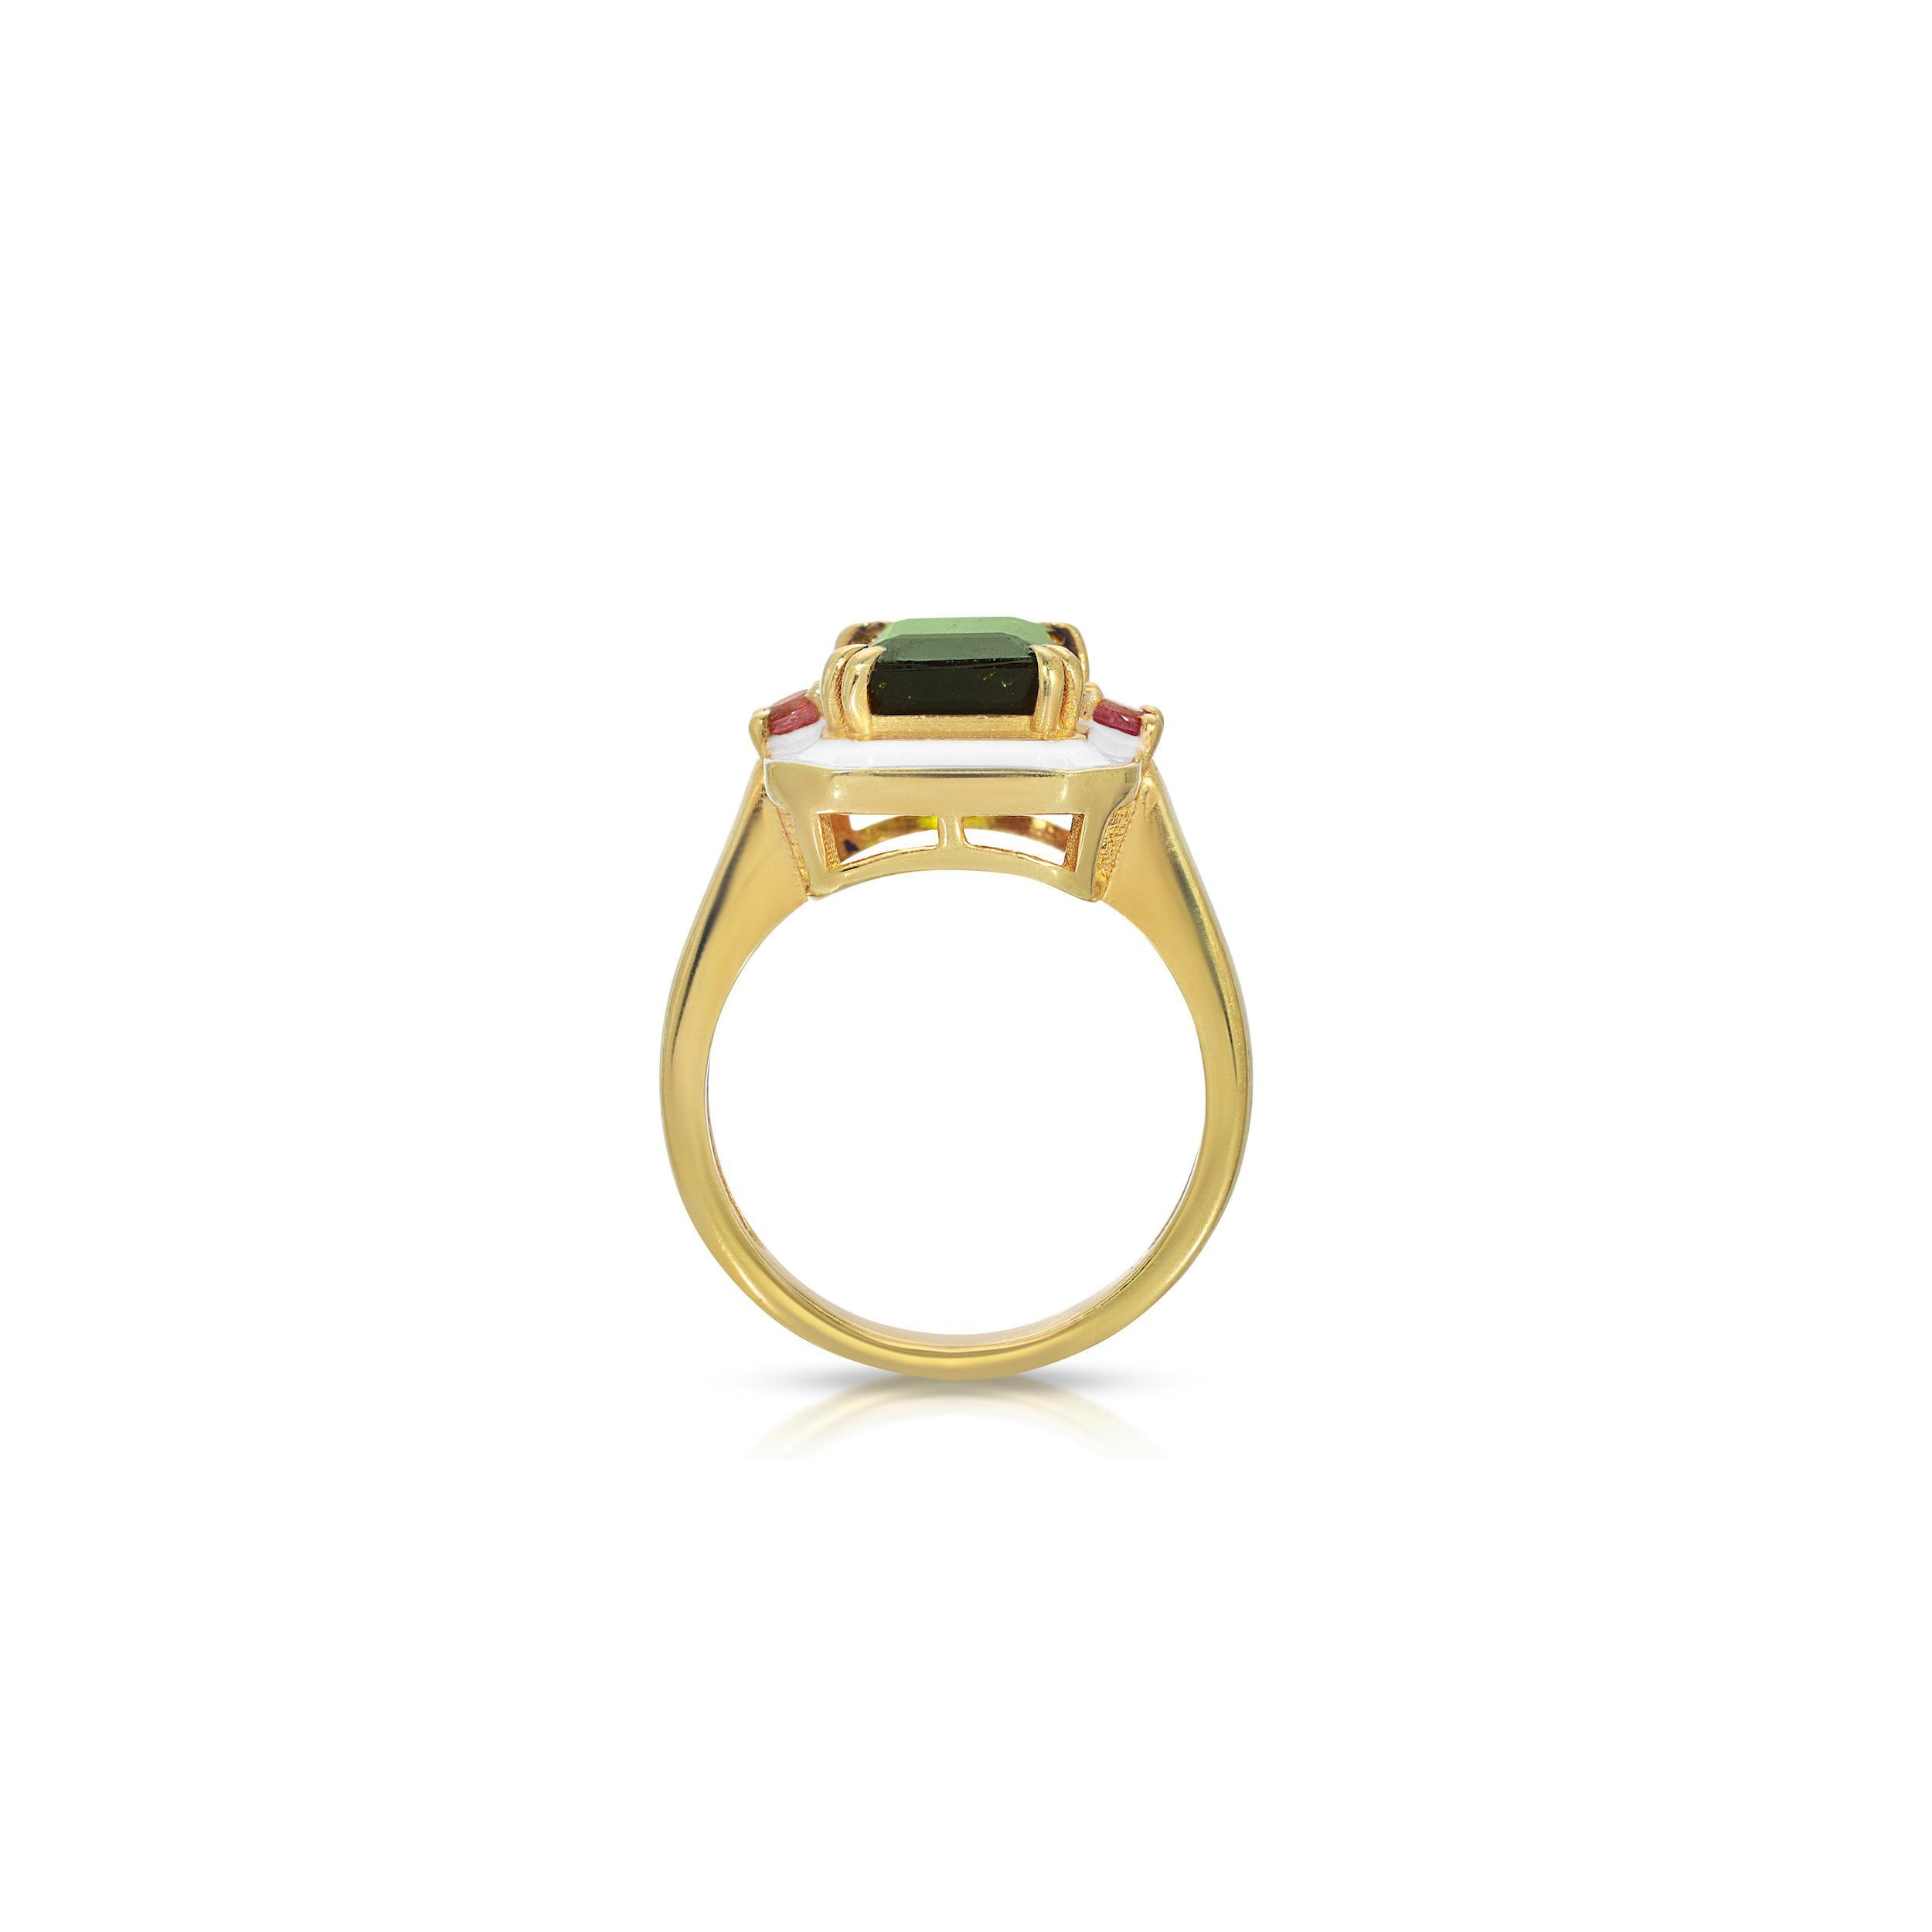 Green and Pink Tourmaline Enamel Ring